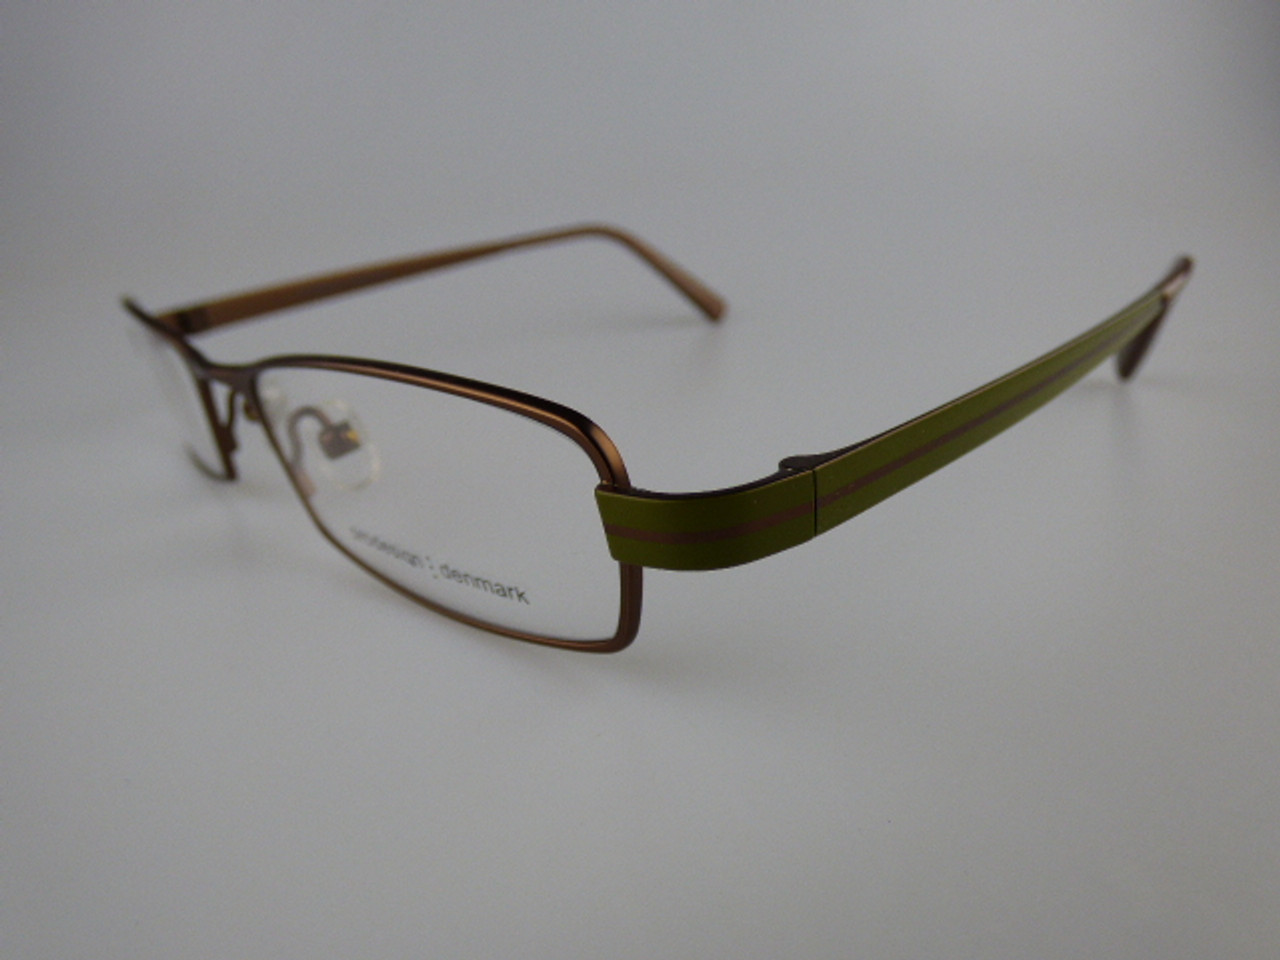 Prodesign Denmark Eyeglass frame model 1171 - Eyeglassframes4less.com